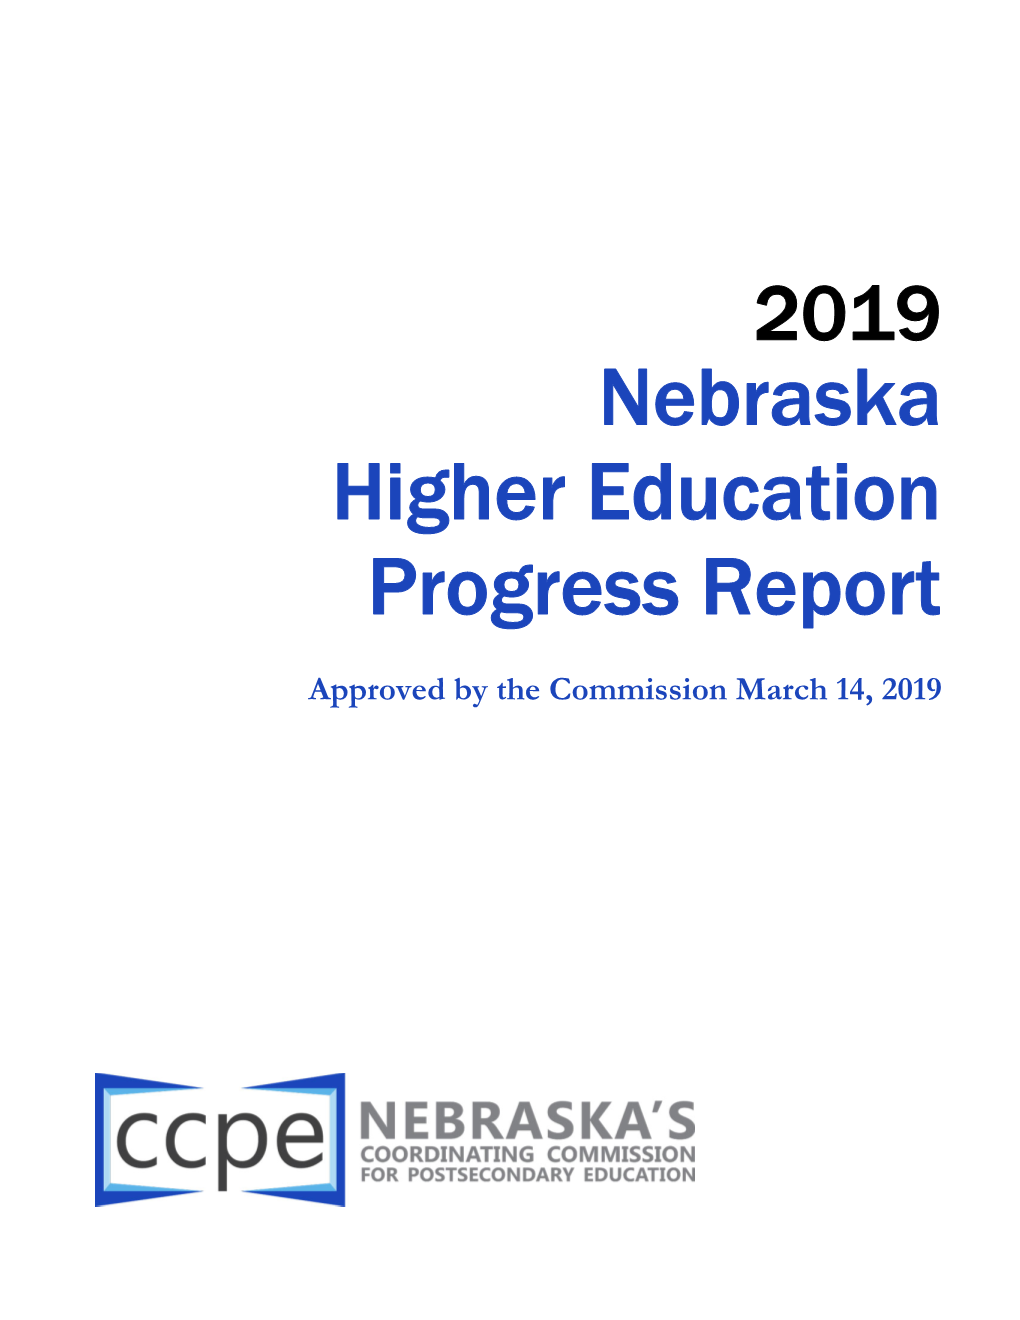 Nebraska Higher Education Progress Report | Key Takeaways I